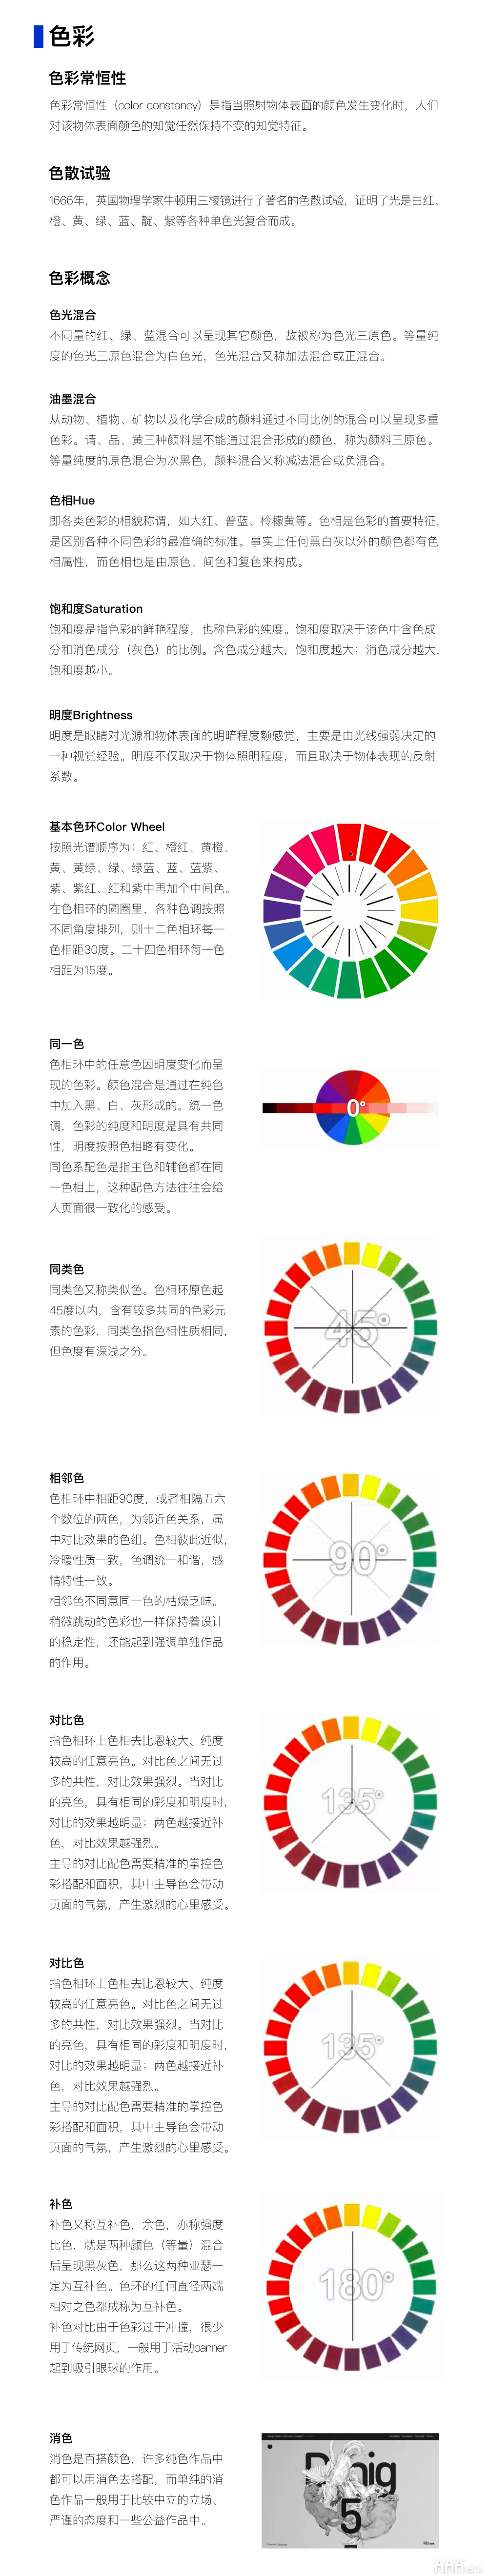 UI设计色彩构成概述